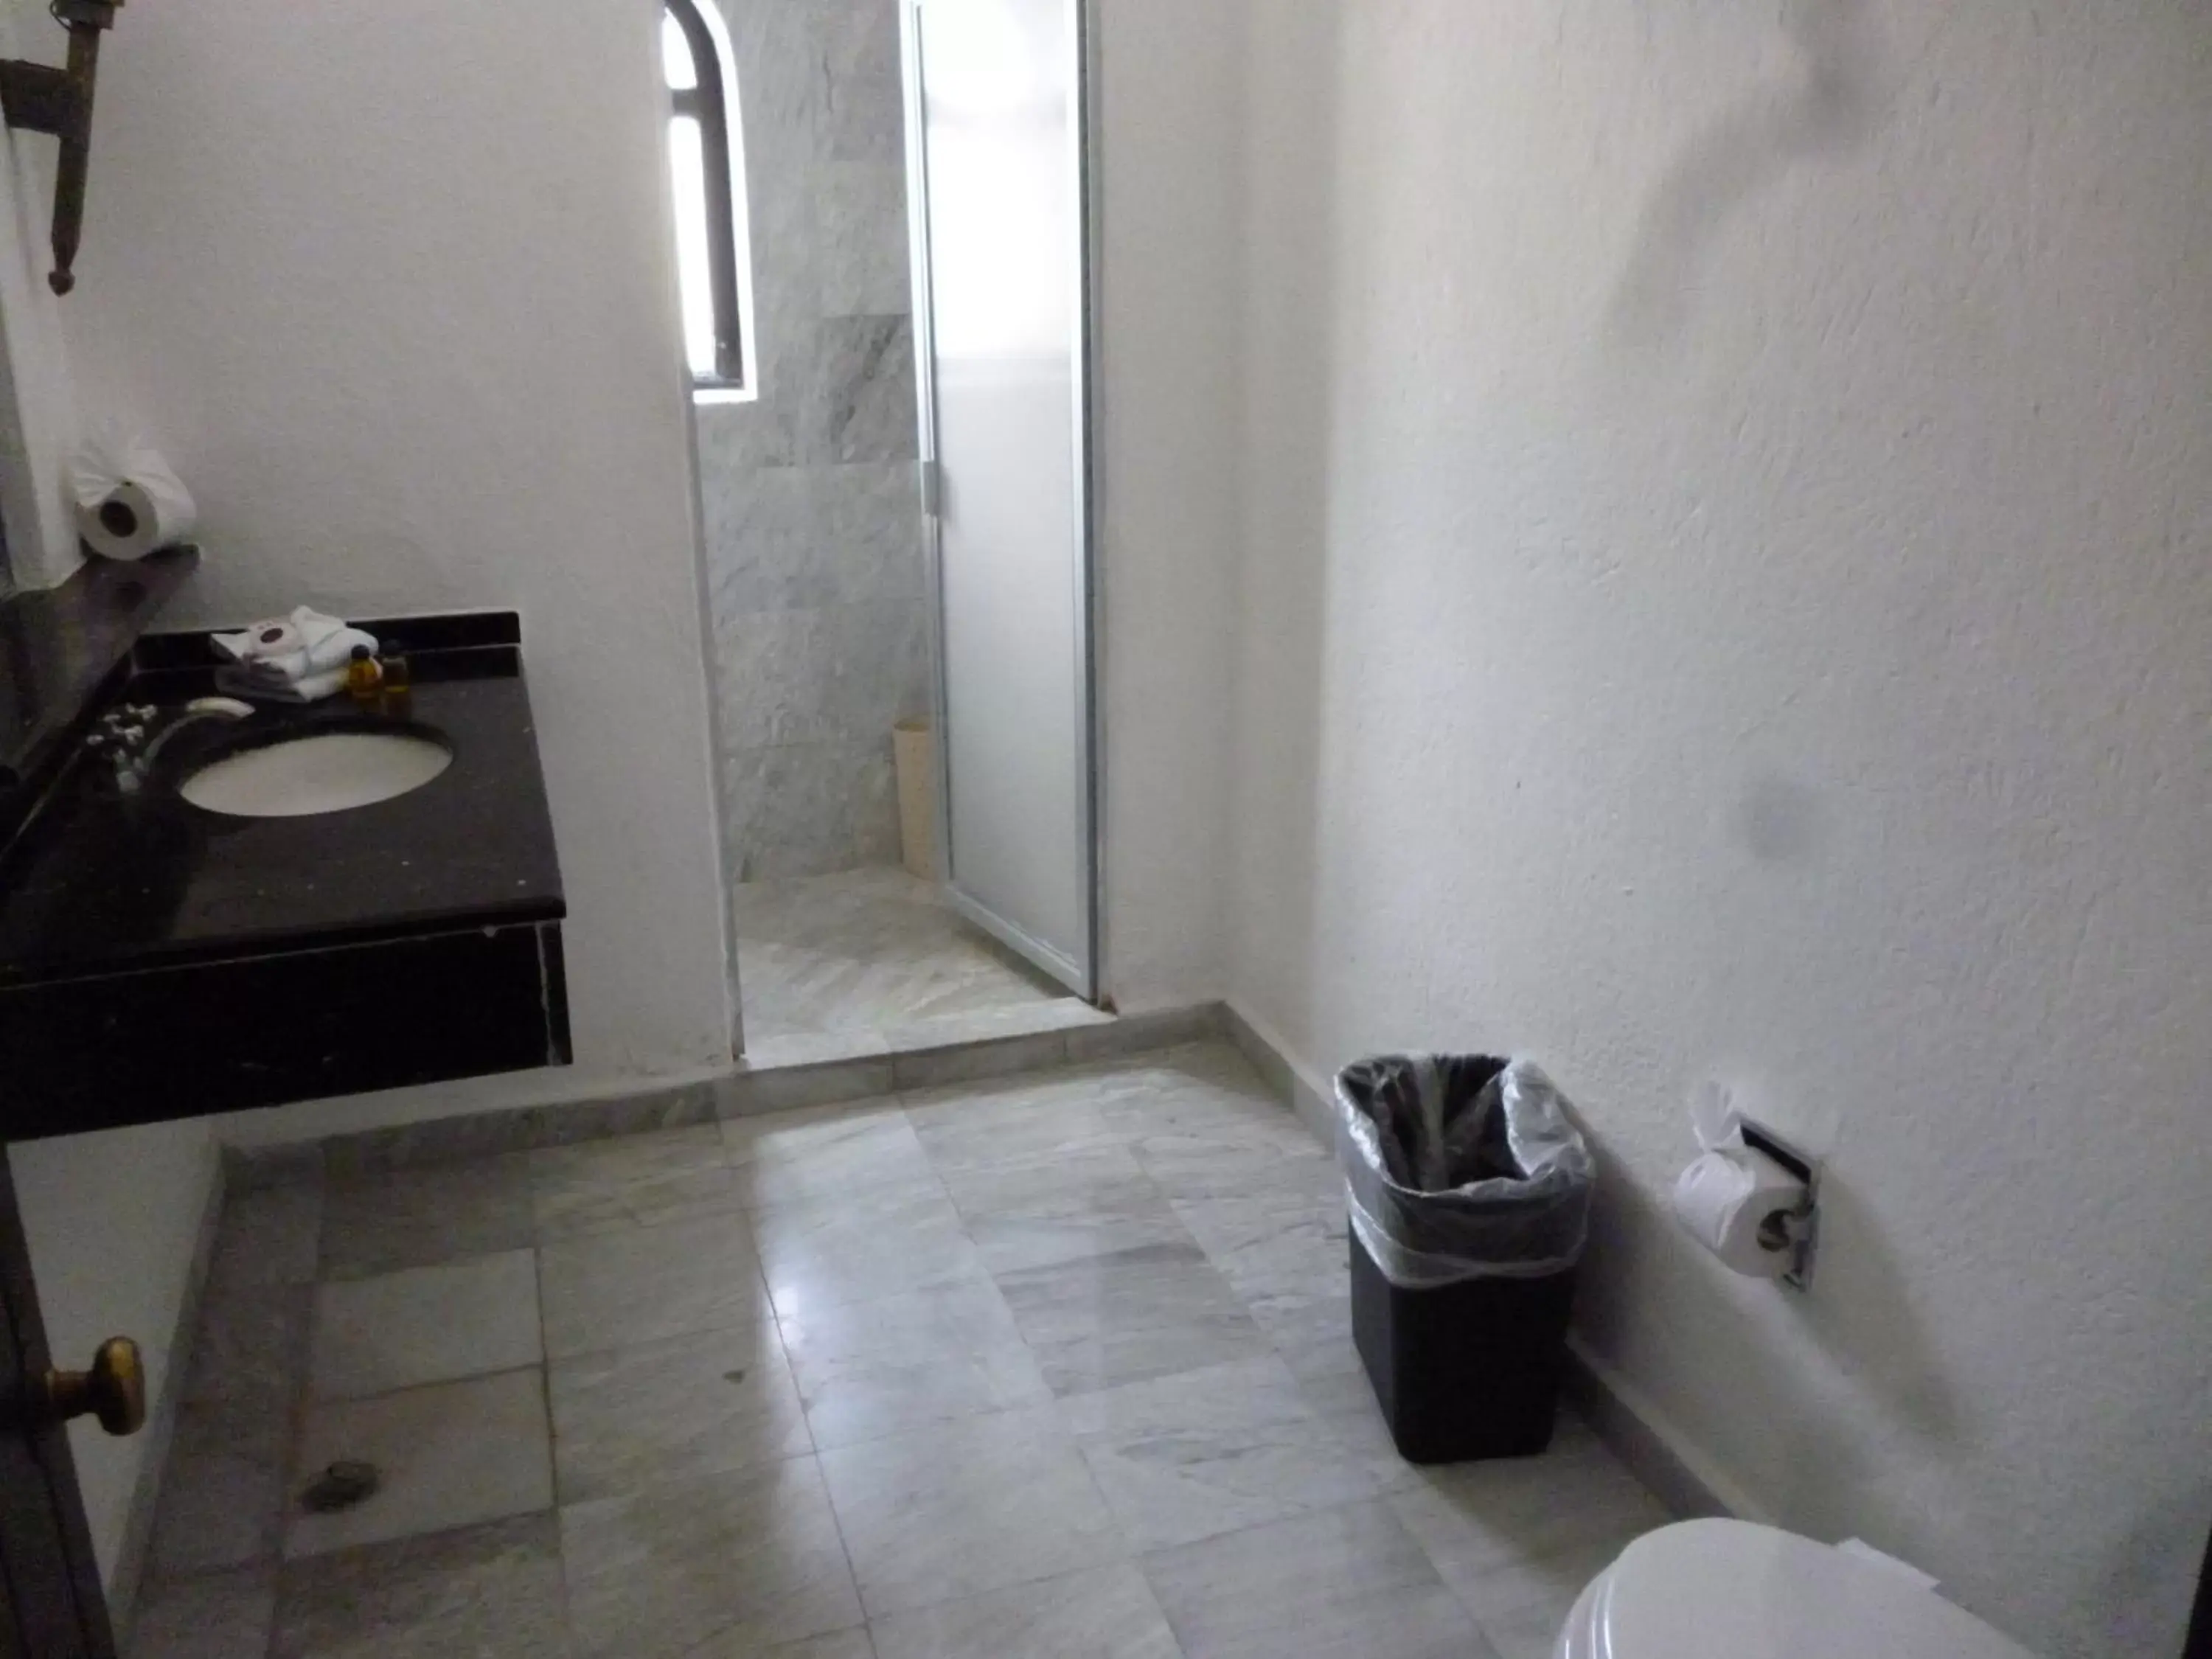 Bathroom in Hotel Castillo de Santa Cecilia